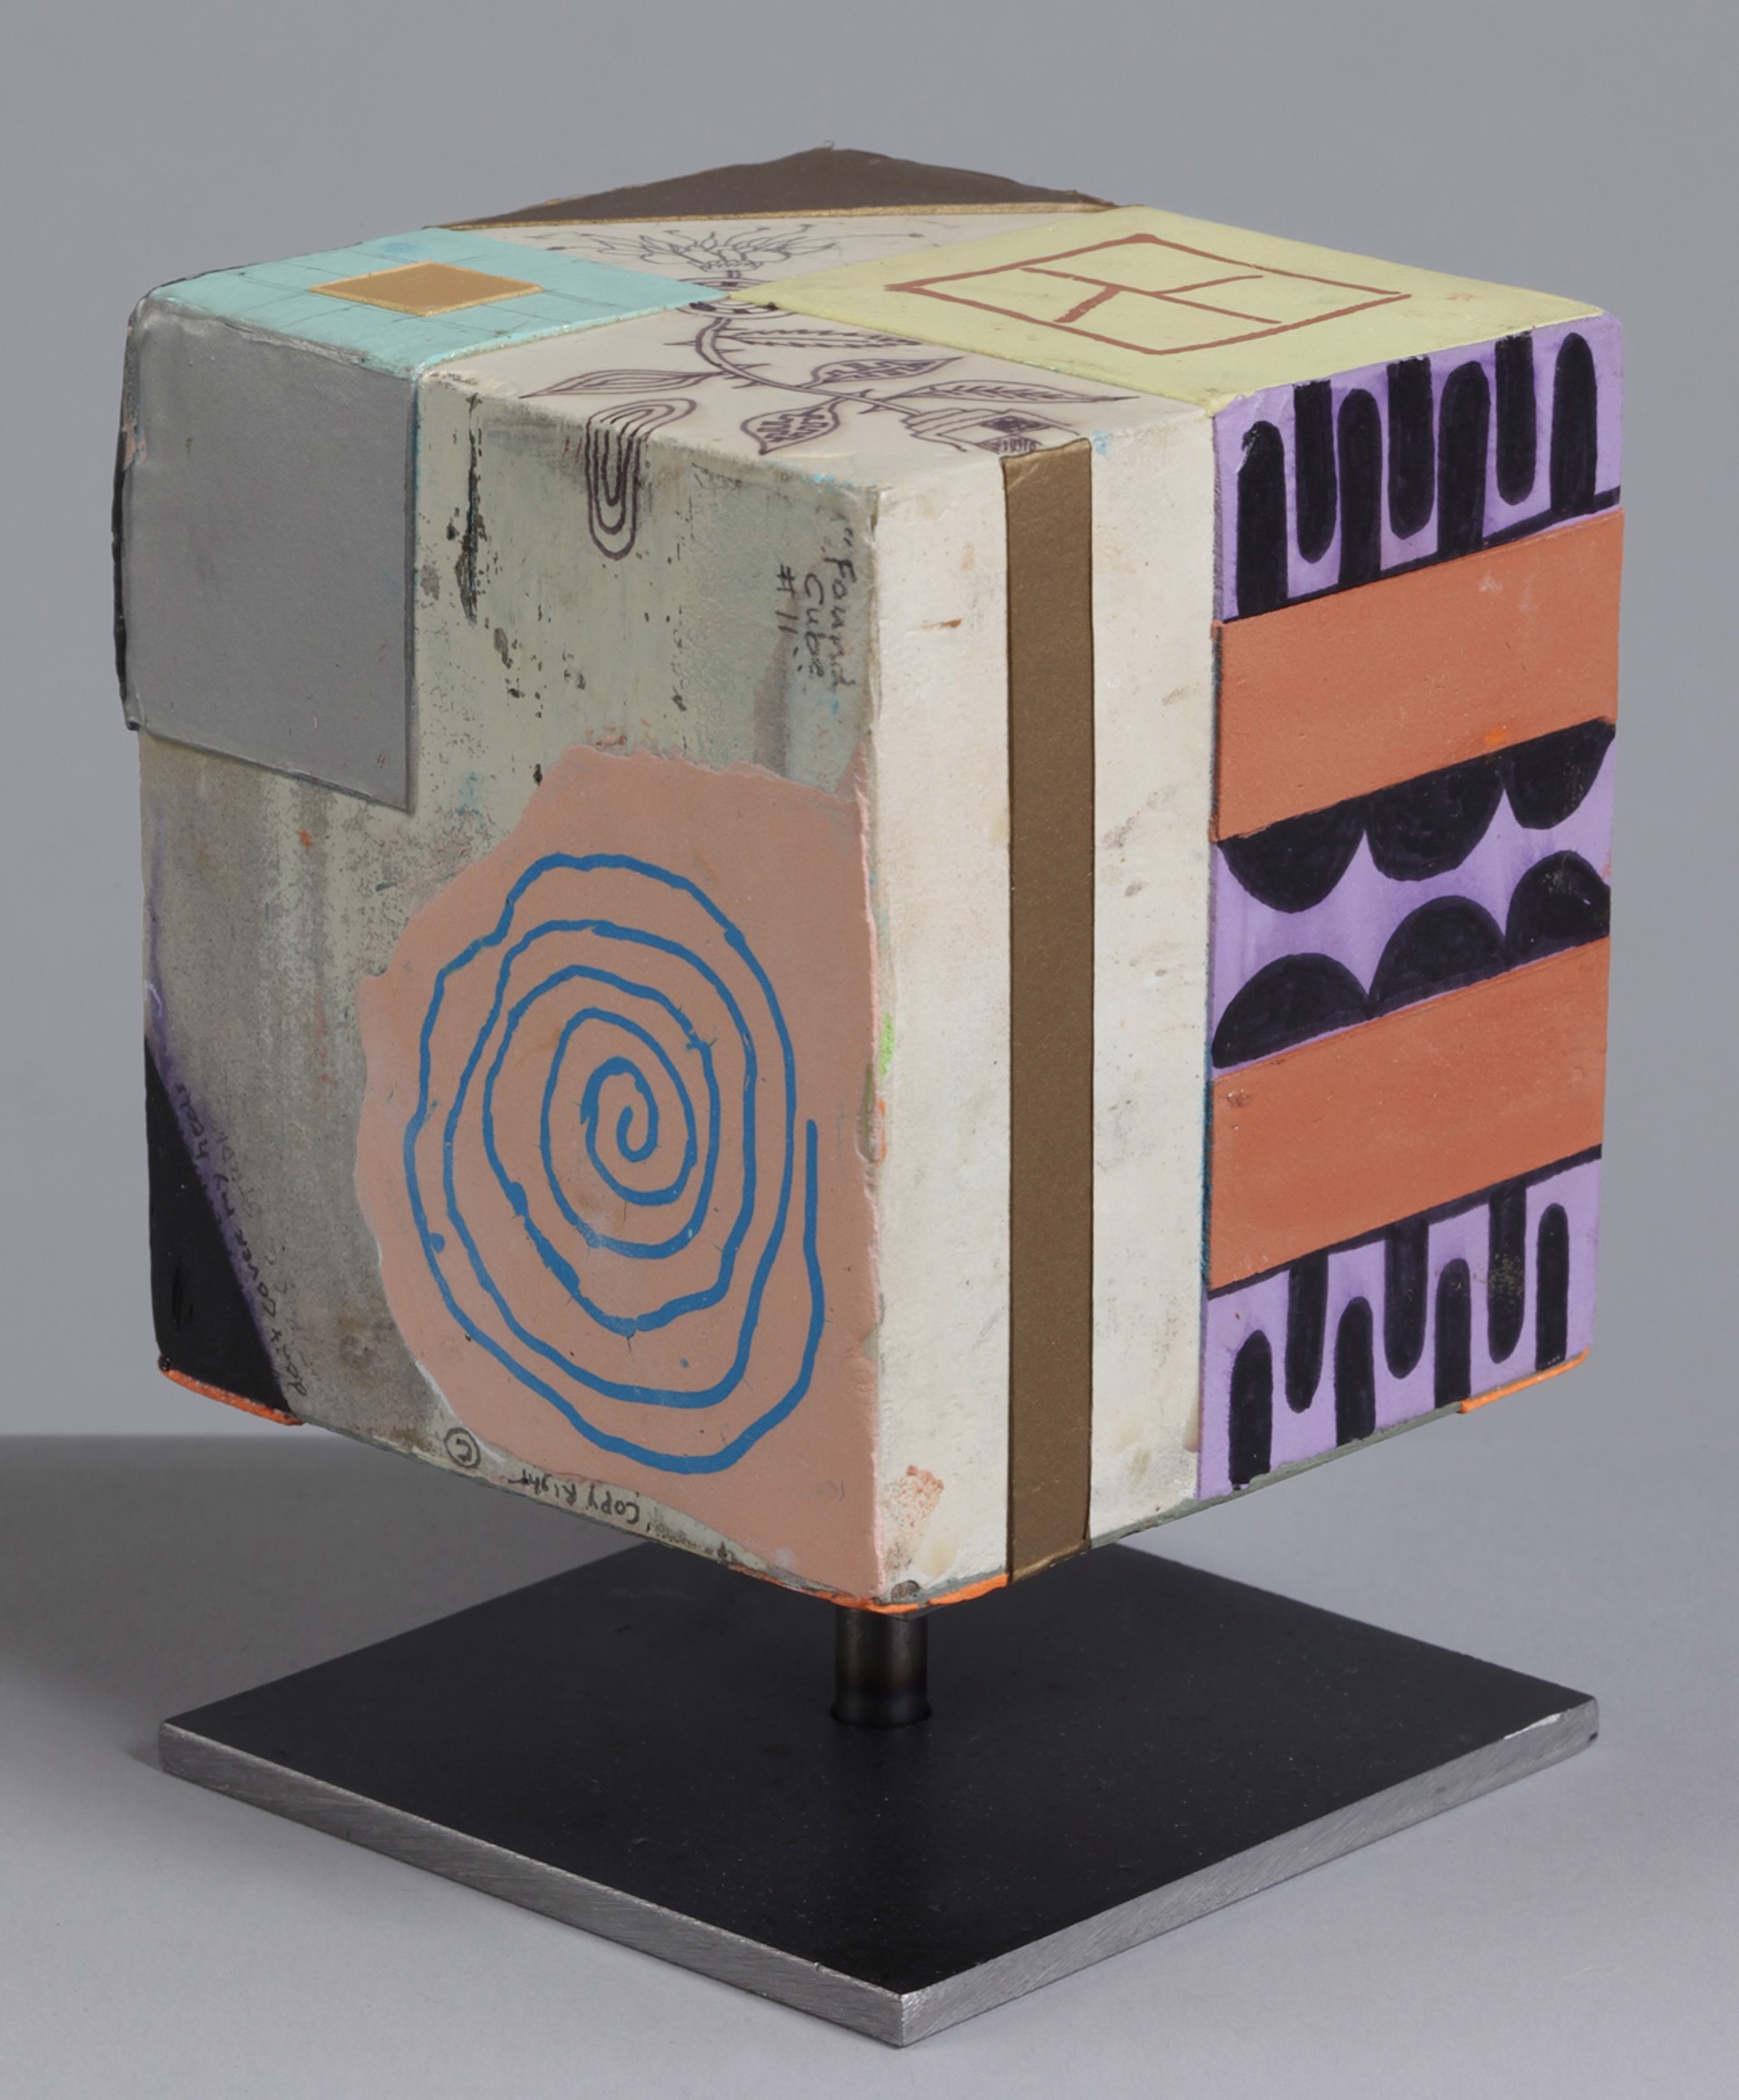 Found Cube #11 by Matthew Baumgardner